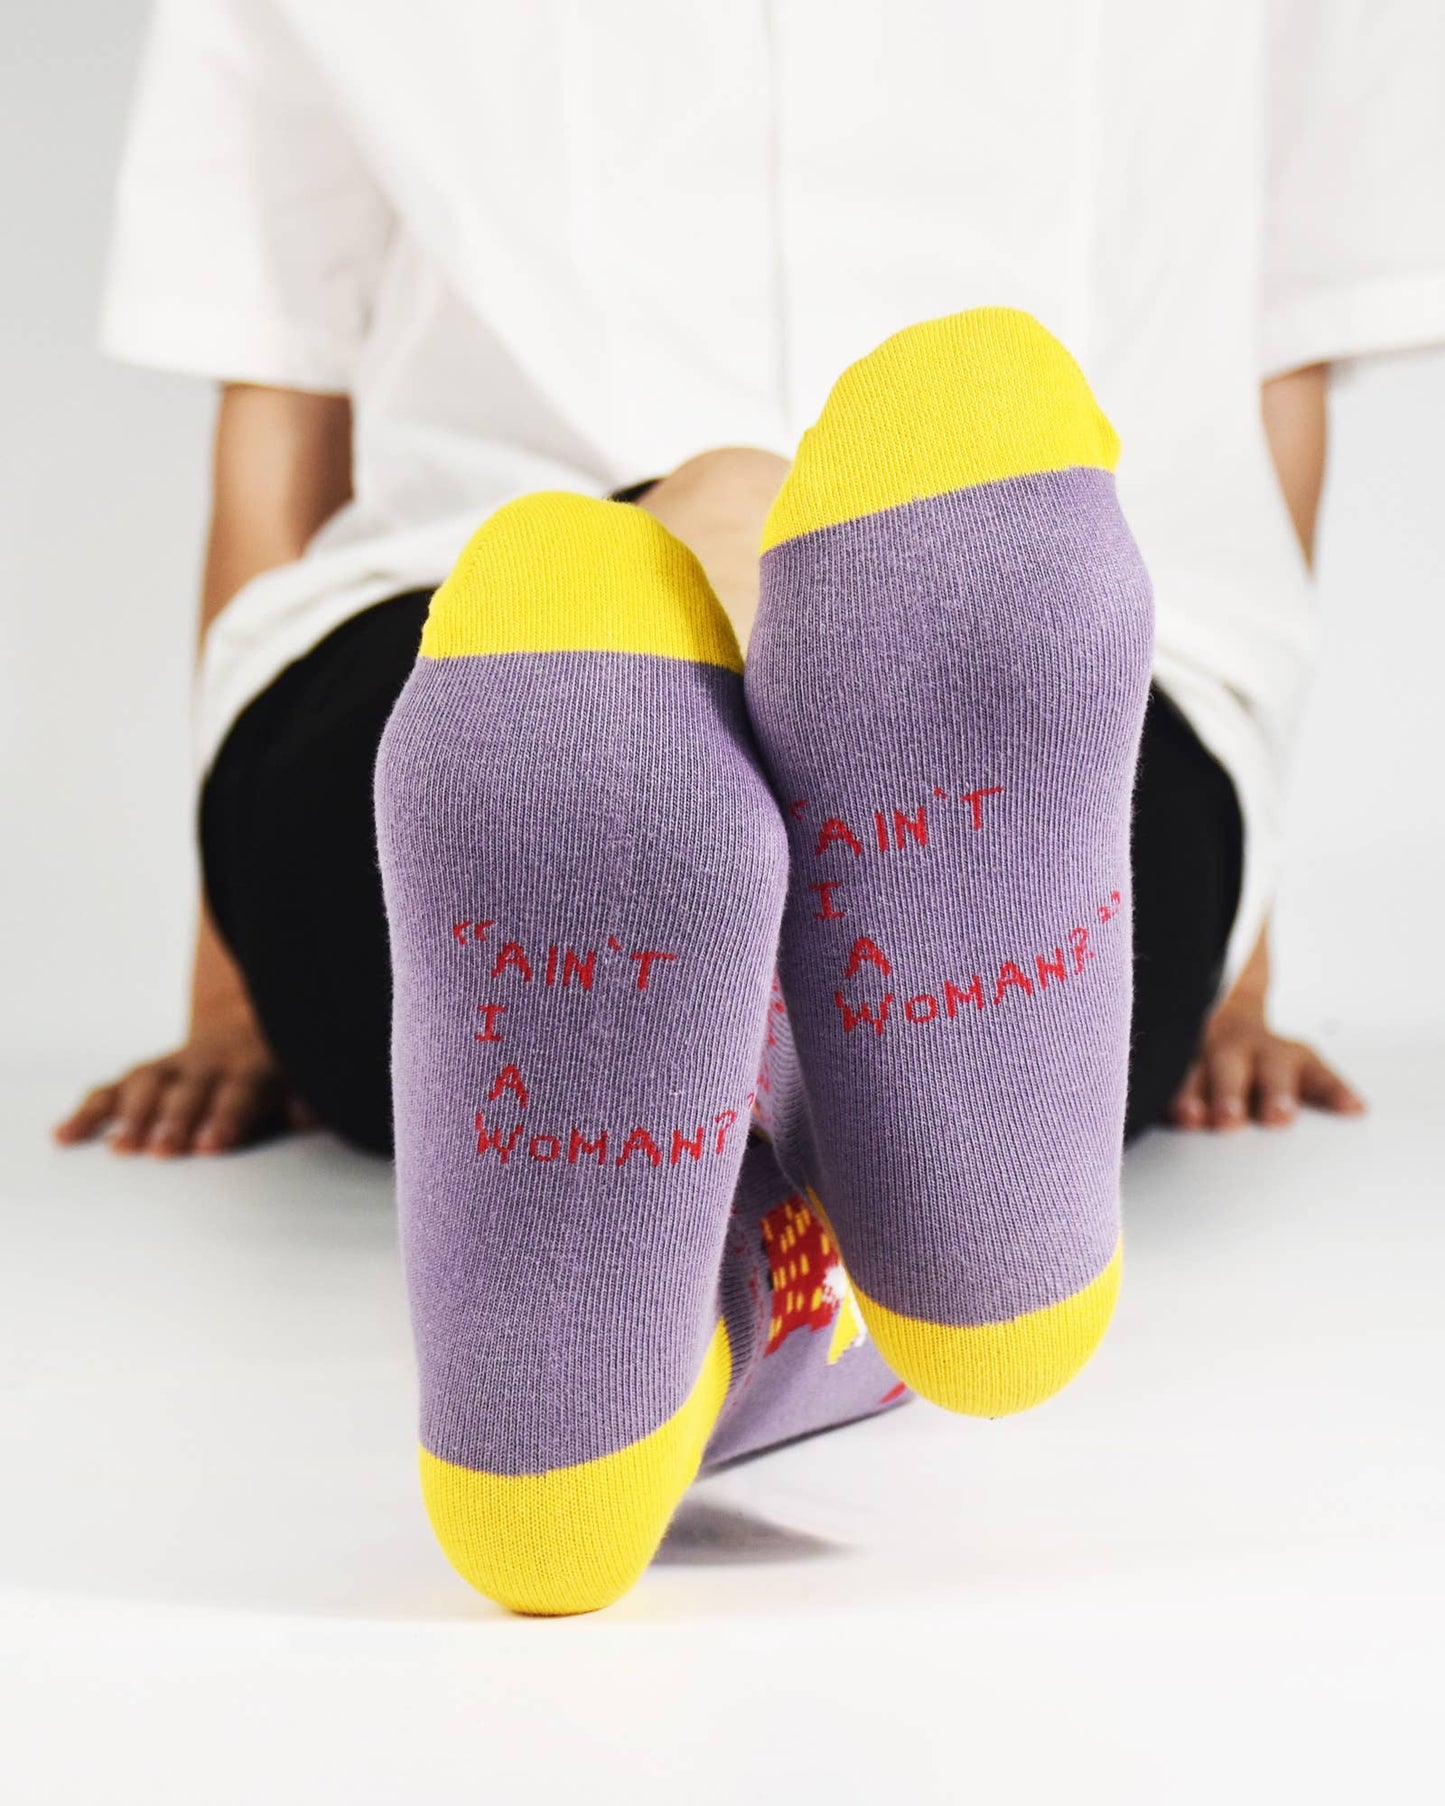 Sojourner Truth Crew Socks